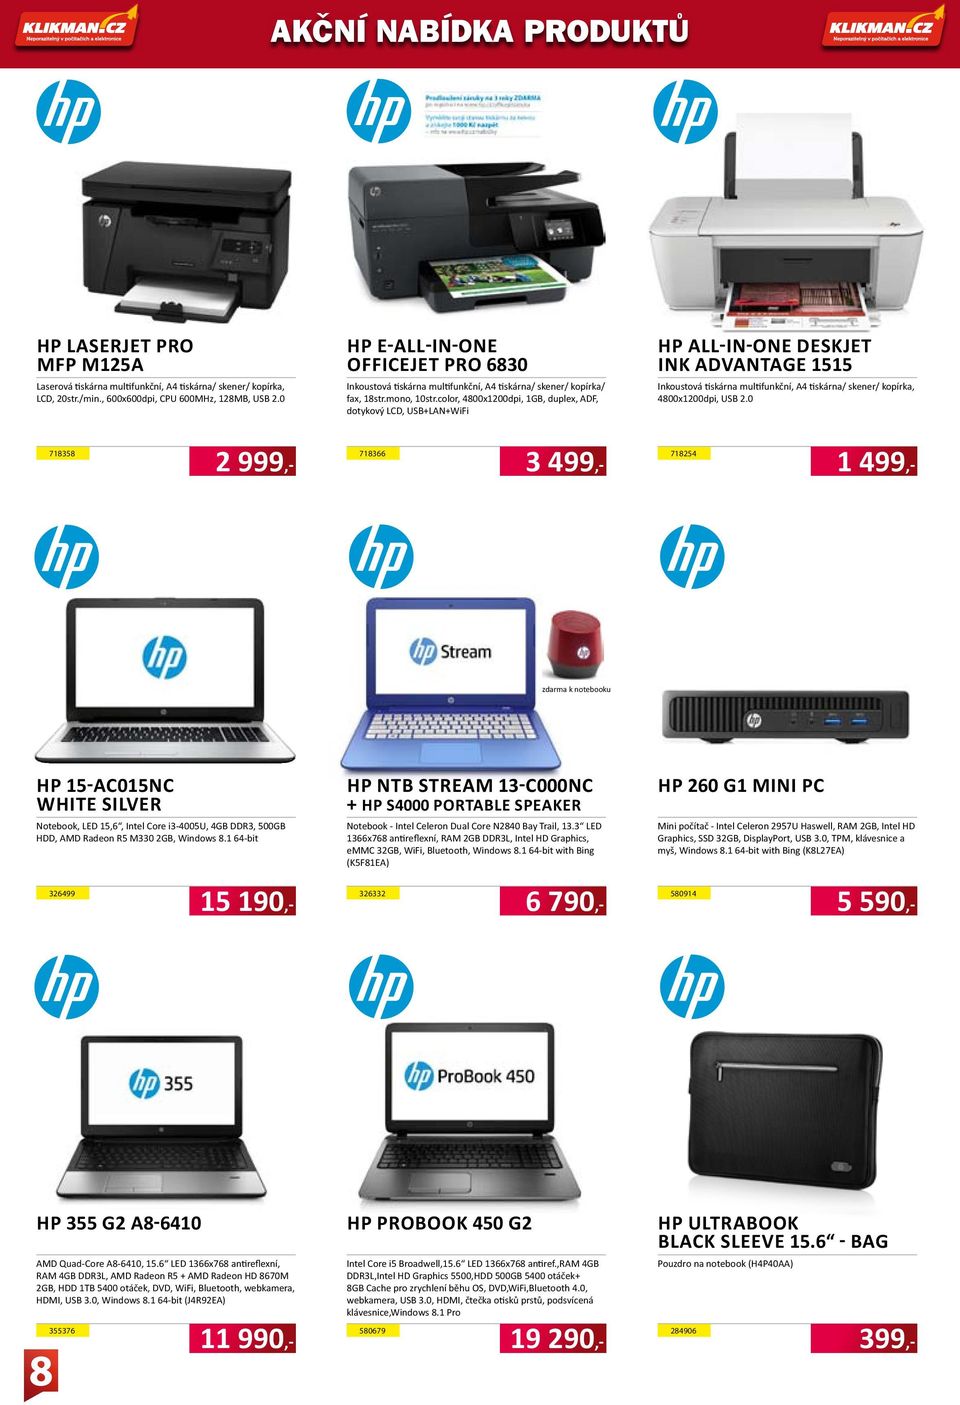 color, 4800x1200dpi, 1GB, duplex, ADF, dotykový LCD, USB+LAN+WiFi HP All-in-One Deskjet Ink Advantage 1515 Inkoustová tiskárna multifunkční, A4 tiskárna/ skener/ kopírka, 4800x1200dpi, USB 2.